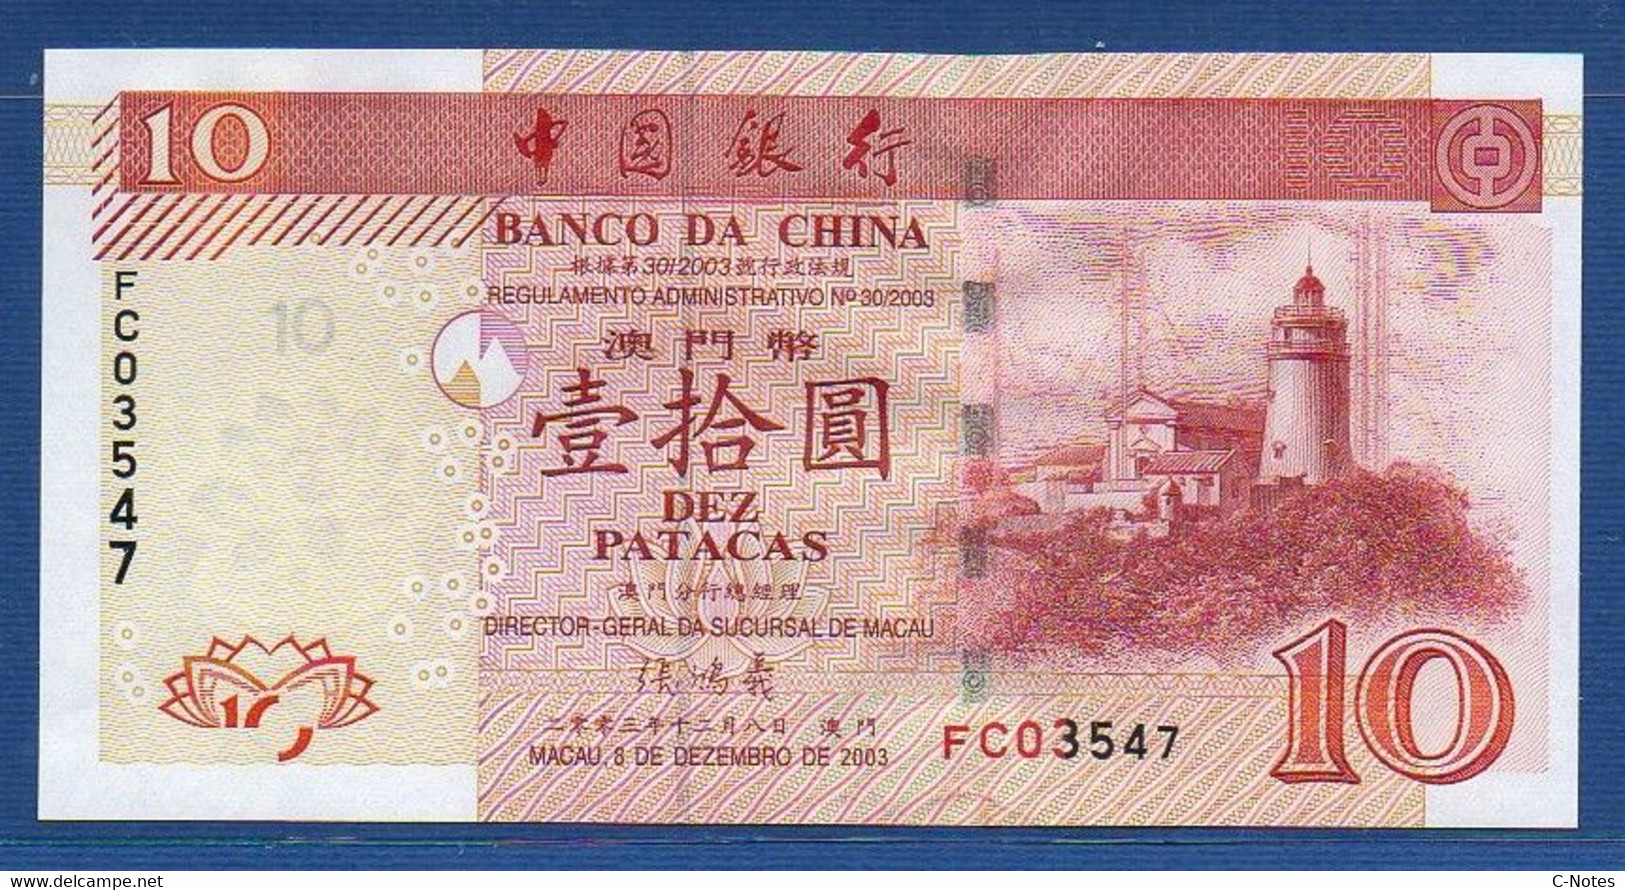 MACAU - Banco Da China - P.102 – 10 Patacas 2003 UNC, Serie FC 03547 - Macau